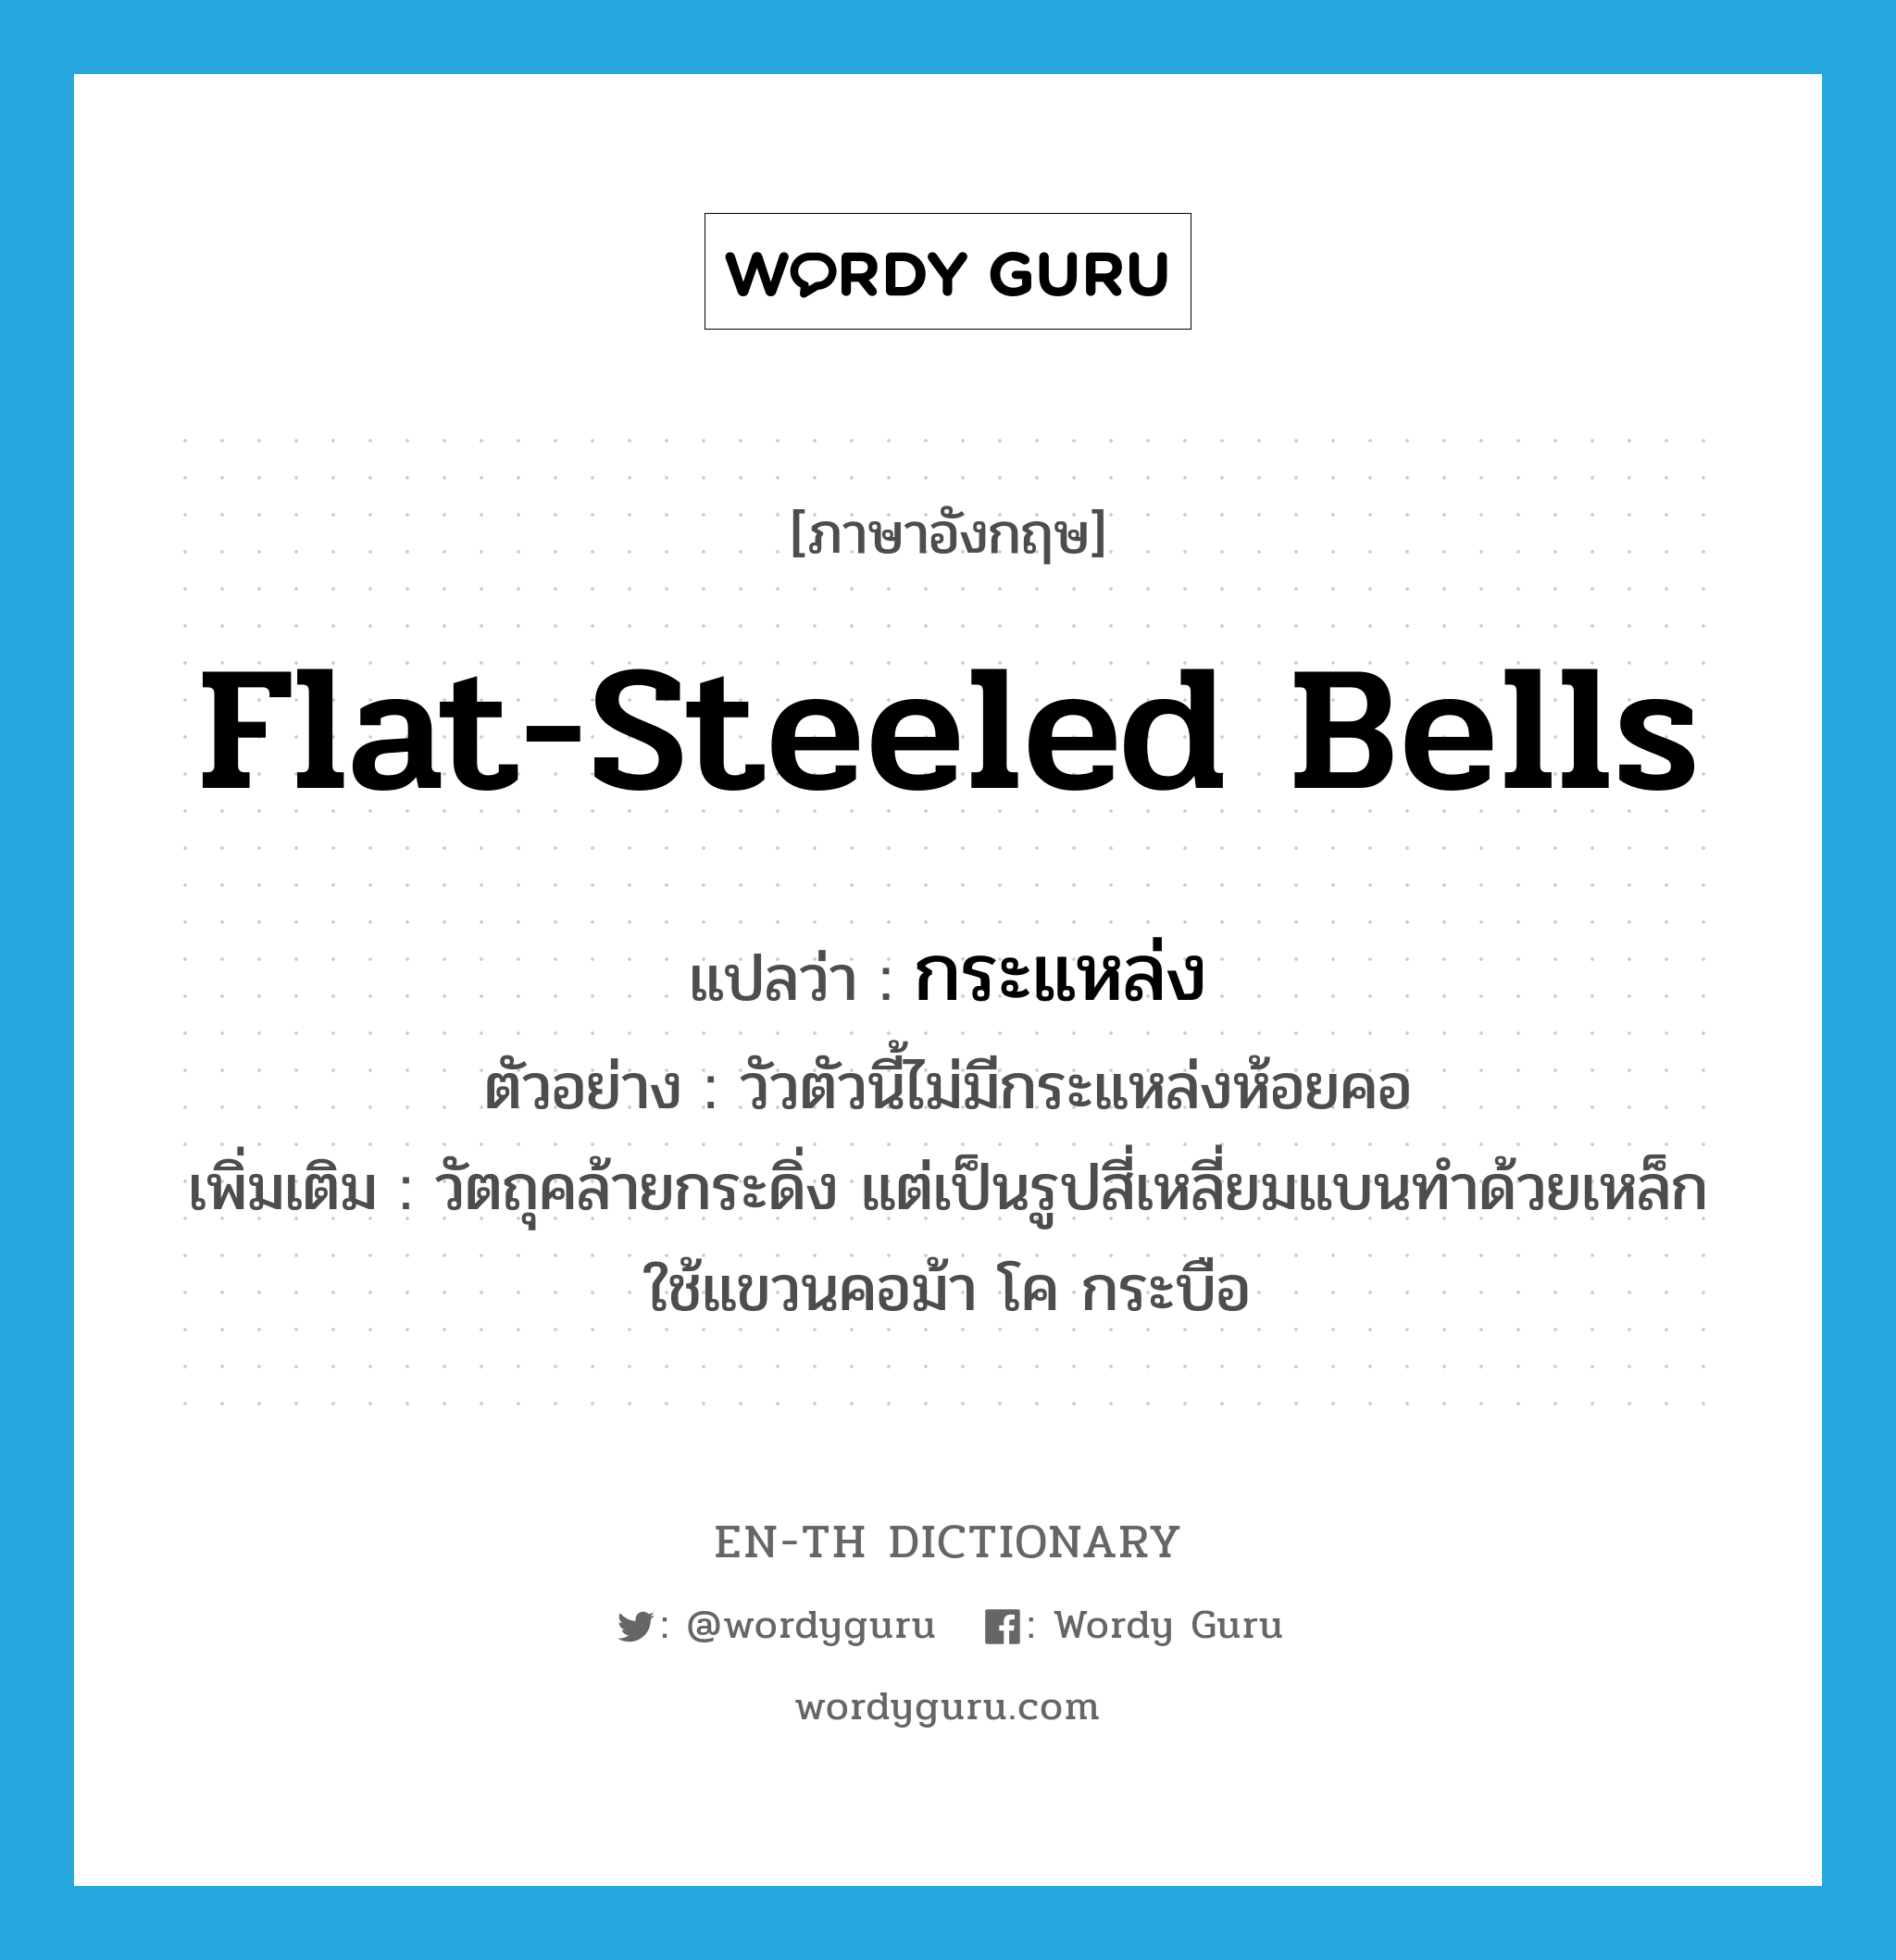 flat-steeled bells แปลว่า?, คำศัพท์ภาษาอังกฤษ flat-steeled bells แปลว่า กระแหล่ง ประเภท N ตัวอย่าง วัวตัวนี้ไม่มีกระแหล่งห้อยคอ เพิ่มเติม วัตถุคล้ายกระดิ่ง แต่เป็นรูปสี่เหลี่ยมแบนทำด้วยเหล็ก ใช้แขวนคอม้า โค กระบือ หมวด N